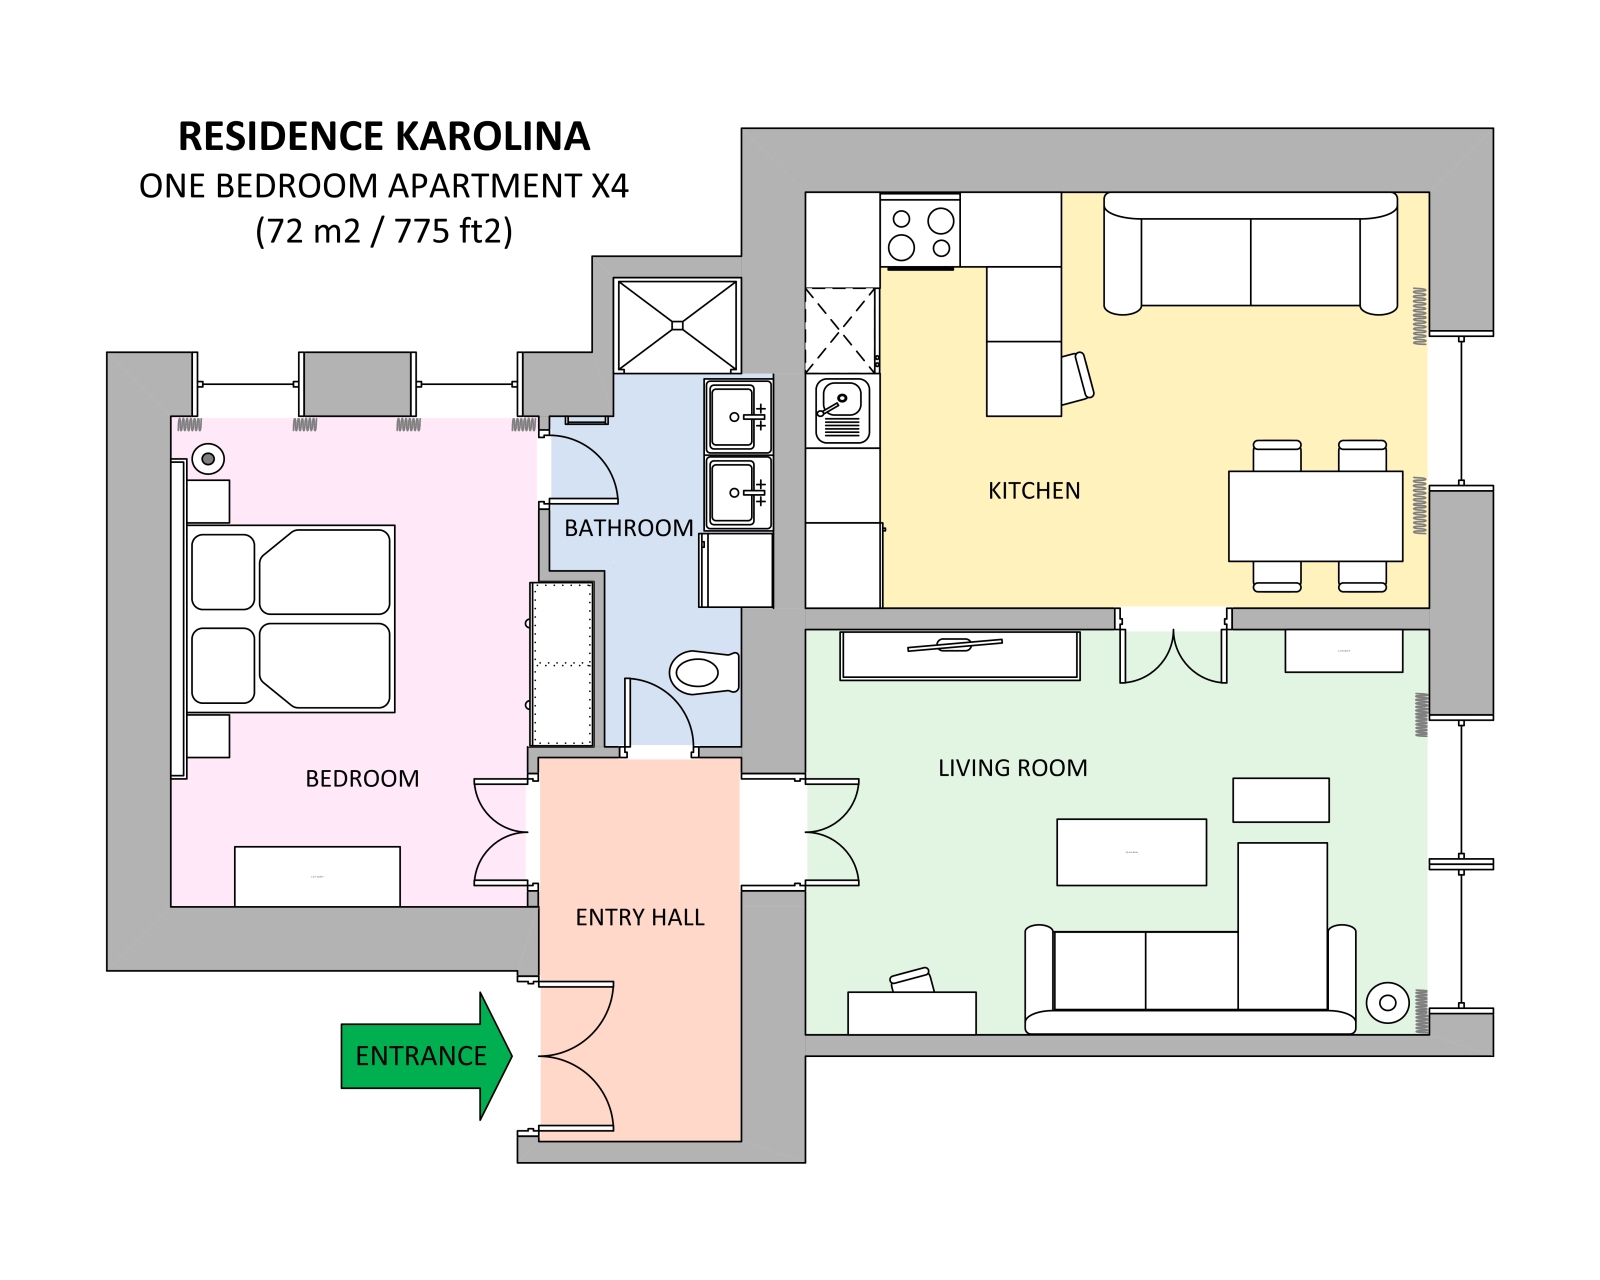 Floorplan of apartment x4 in Residence Karolina in Prague